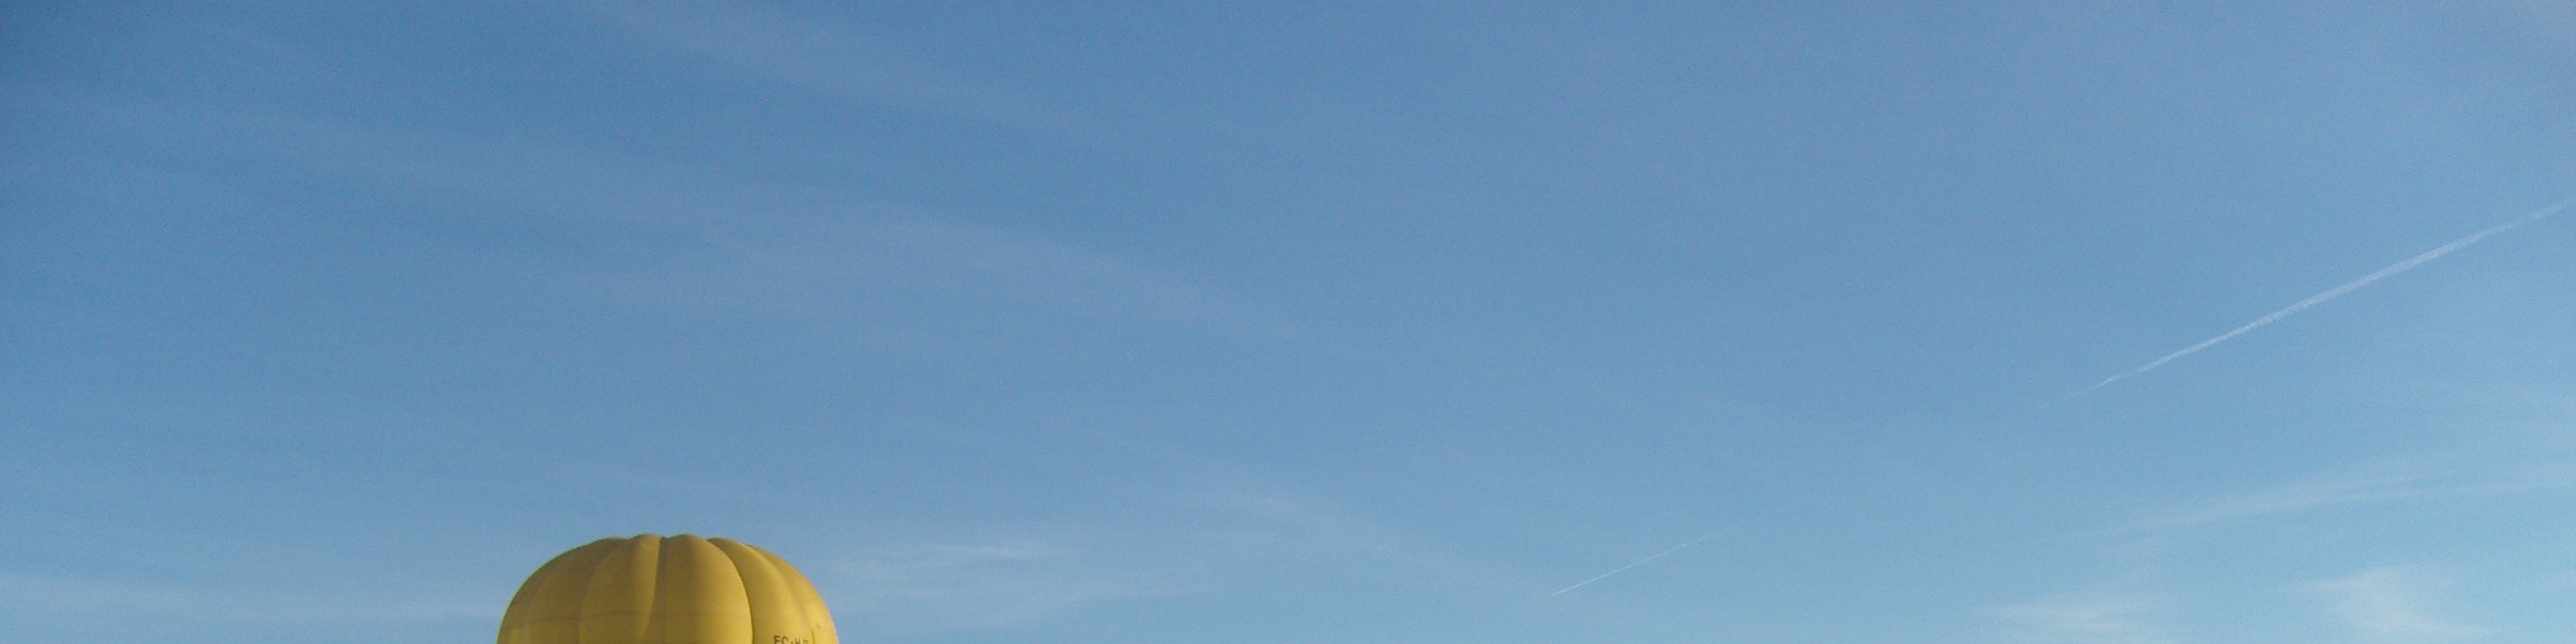 馬約卡島日落熱氣球體驗